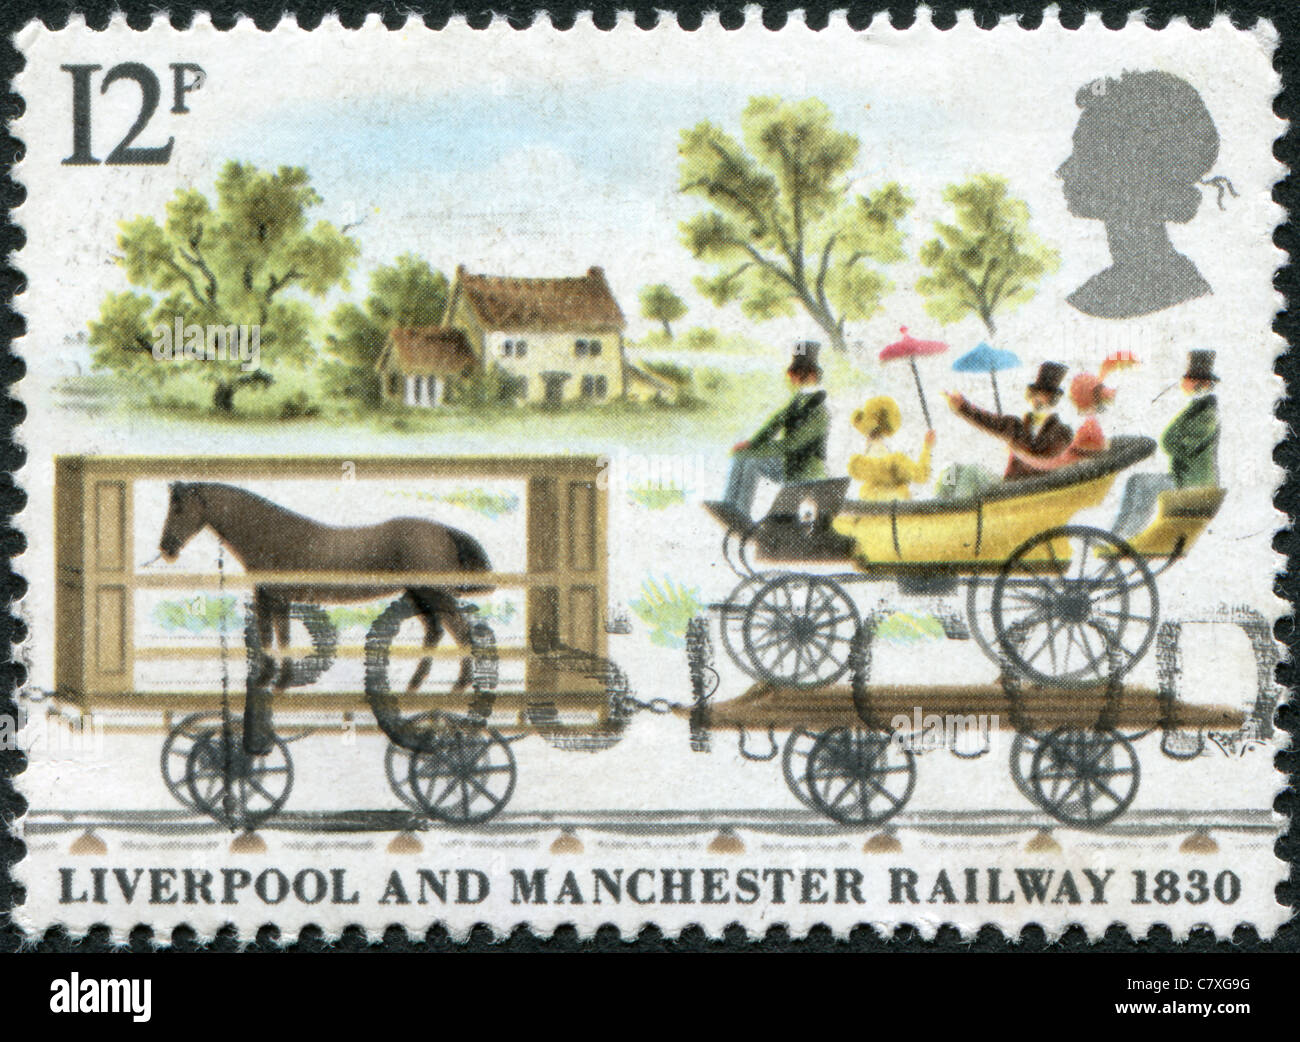 Royaume-uni -1980 : un timbre imprimé en Angleterre, est consacré à la 150e anniversaire de la ligne de chemin de fer Liverpool-Manchester Banque D'Images